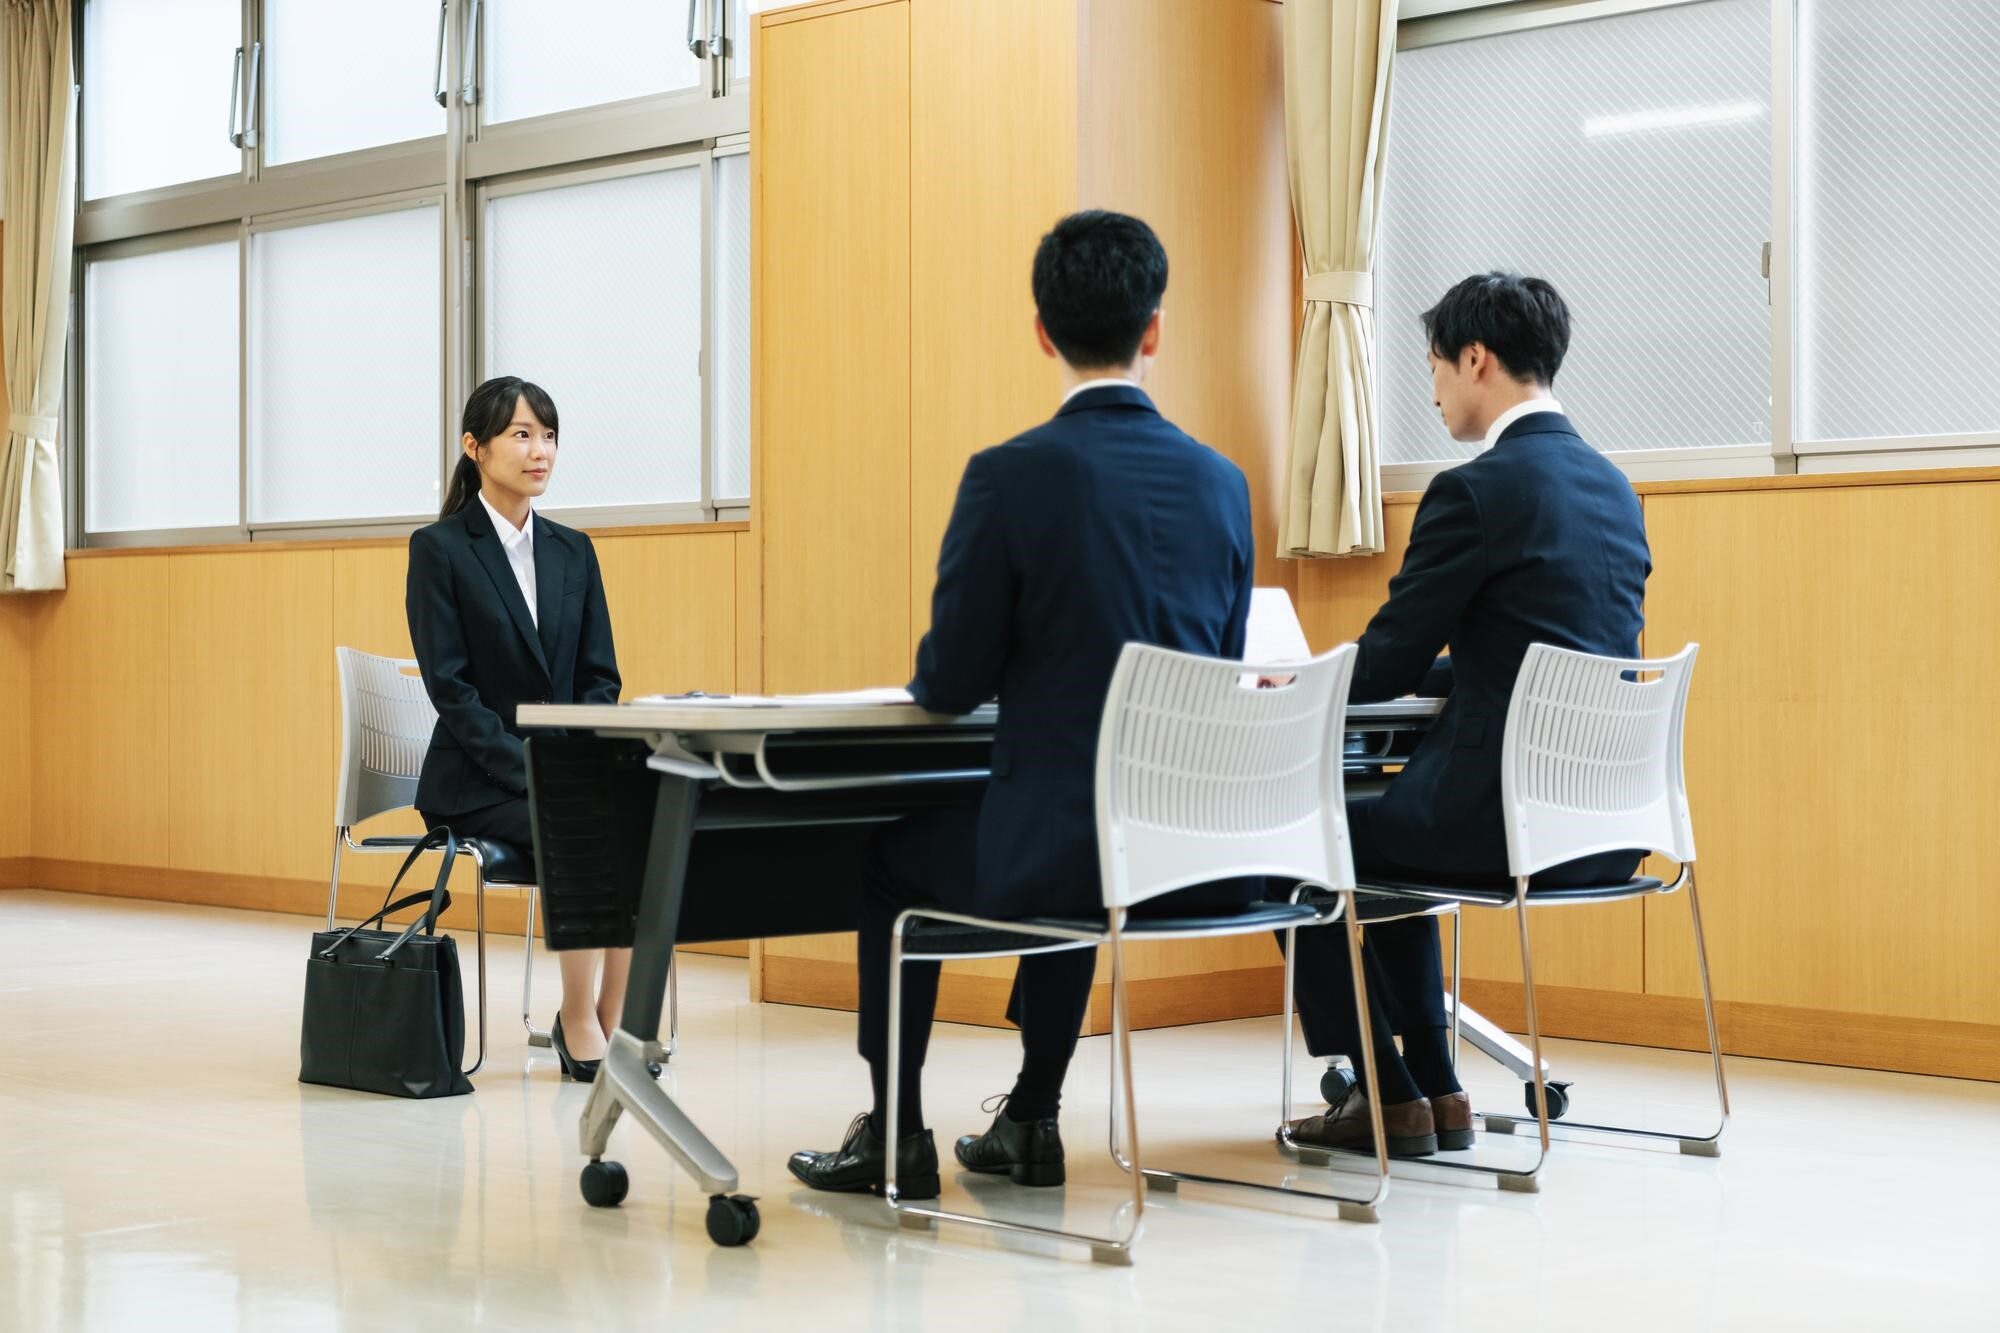 椅子に座るスーツ姿の女性と机を挟んで向かいに座る男性2人の後ろ姿